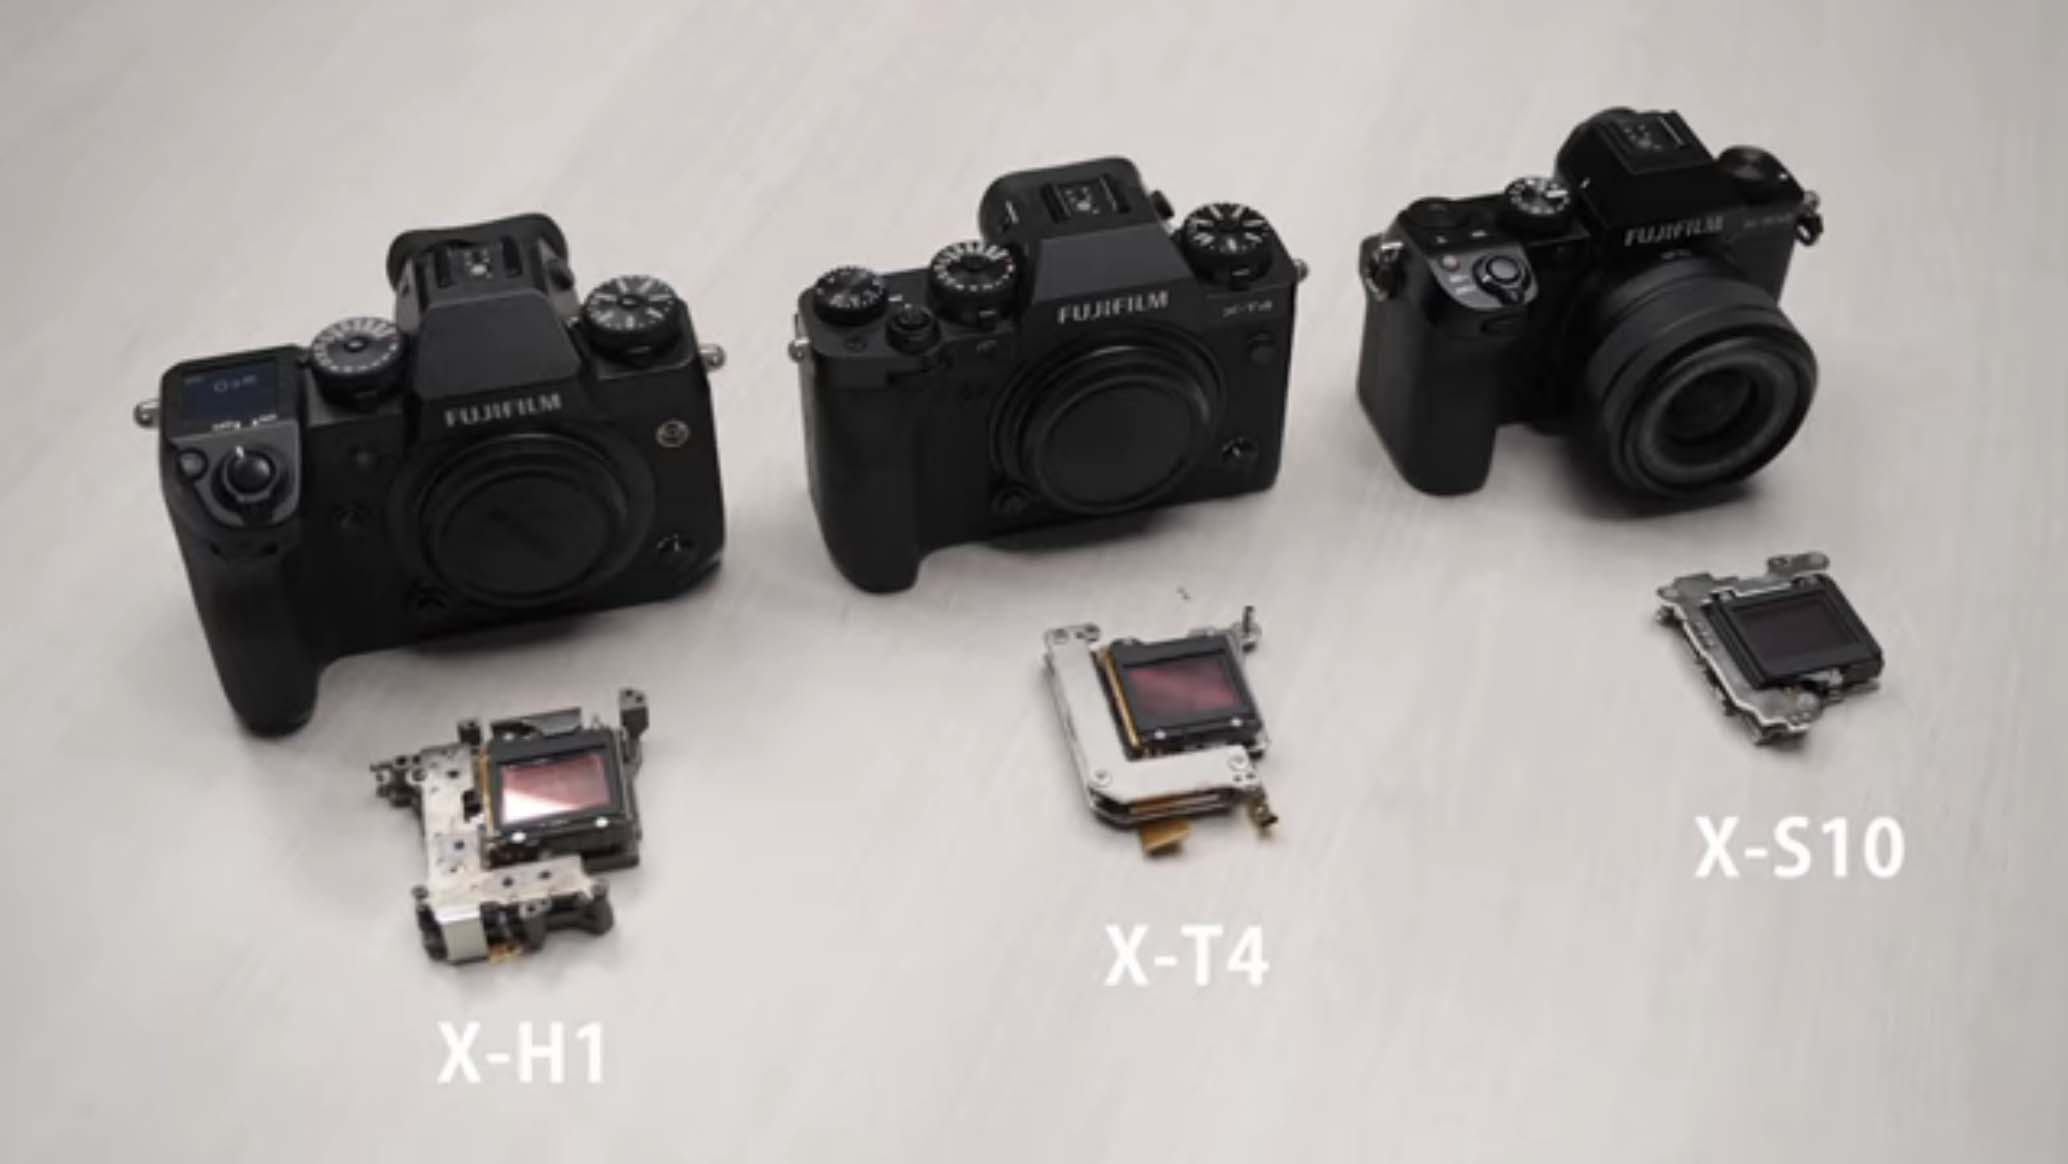 Fujifilm X-S10 IBIS Compared to X-T4 and X-H1 - Fuji Addict